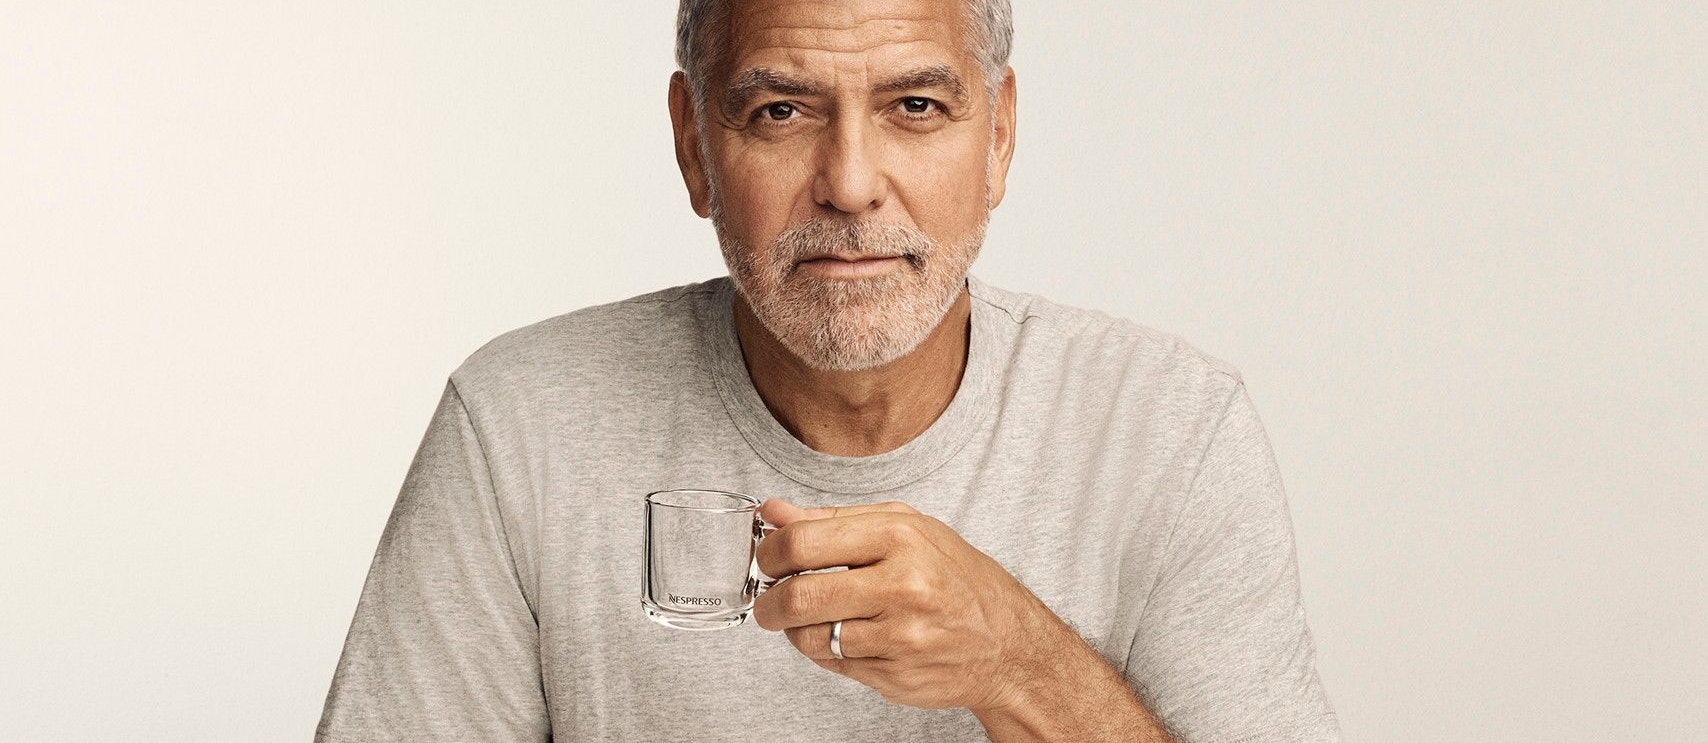 Tasse leer: In London wird George Clooney seinen Nespresso künftig aus einem To-go-Becher trinken.